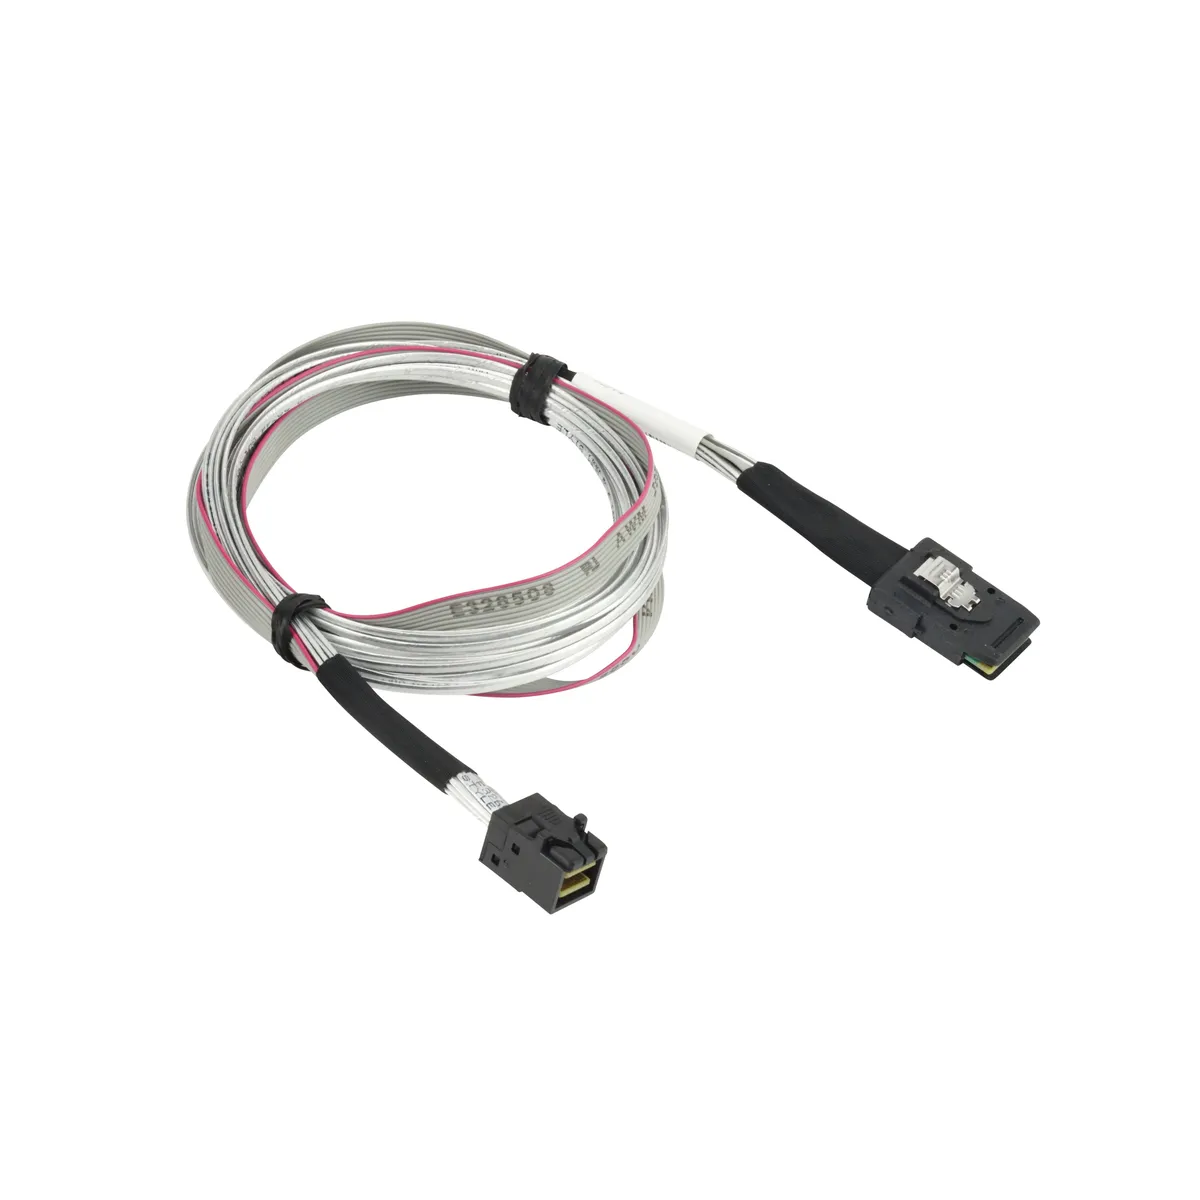 Supermicro Mini-SAS-HD (SFF-8643) to Mini-SAS-HD (SFF-8643) Cable 39"